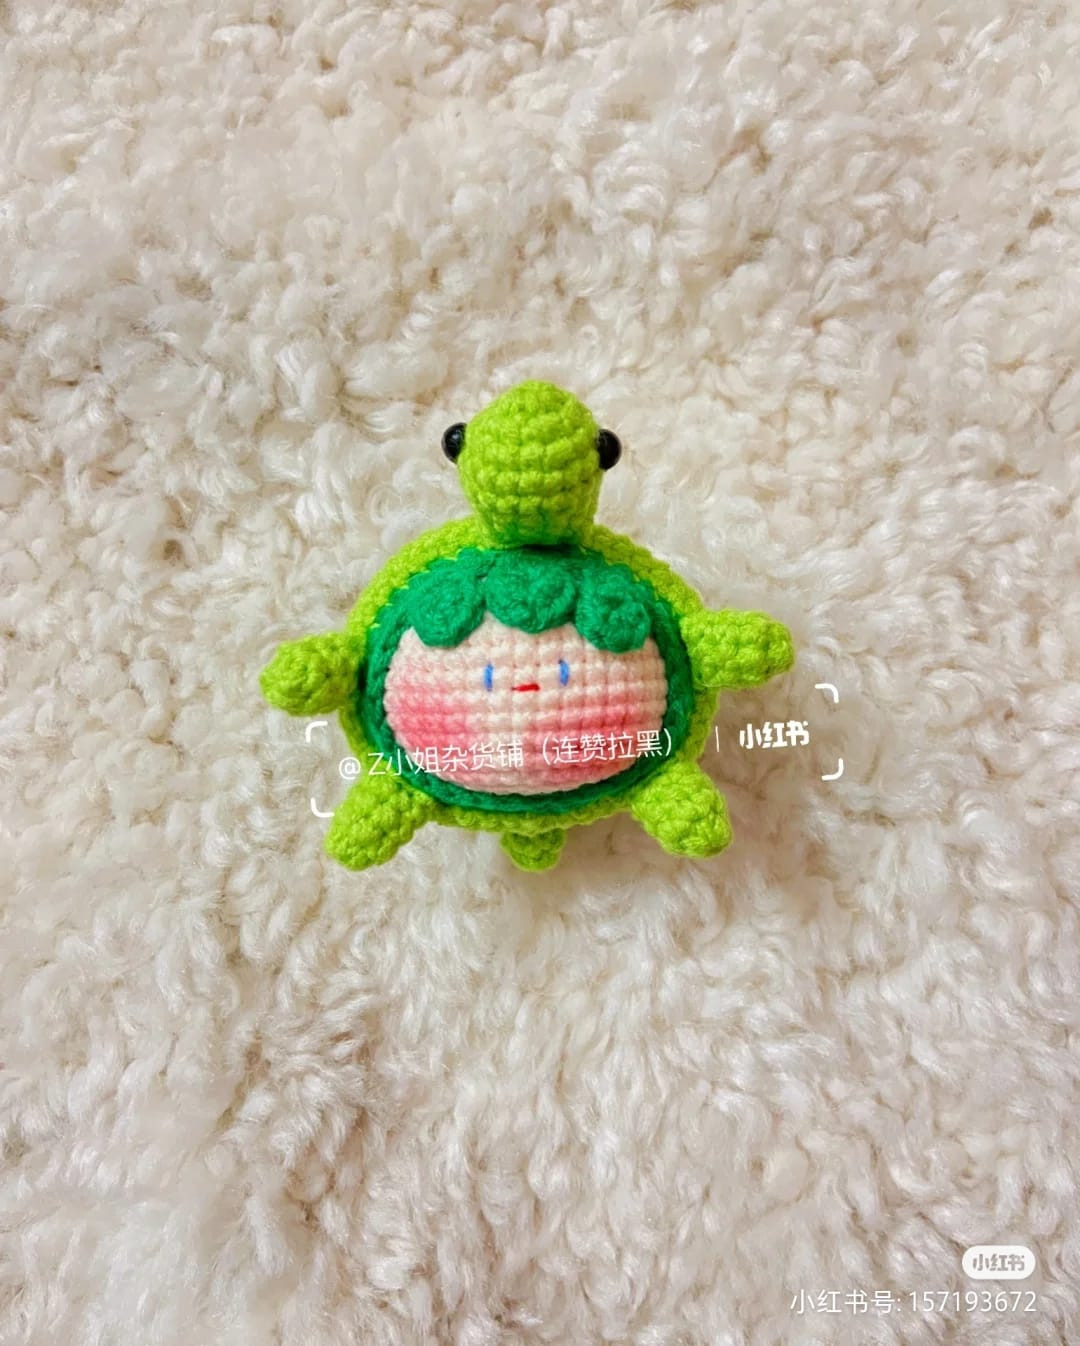 Turtle crochet pattern, baby's face